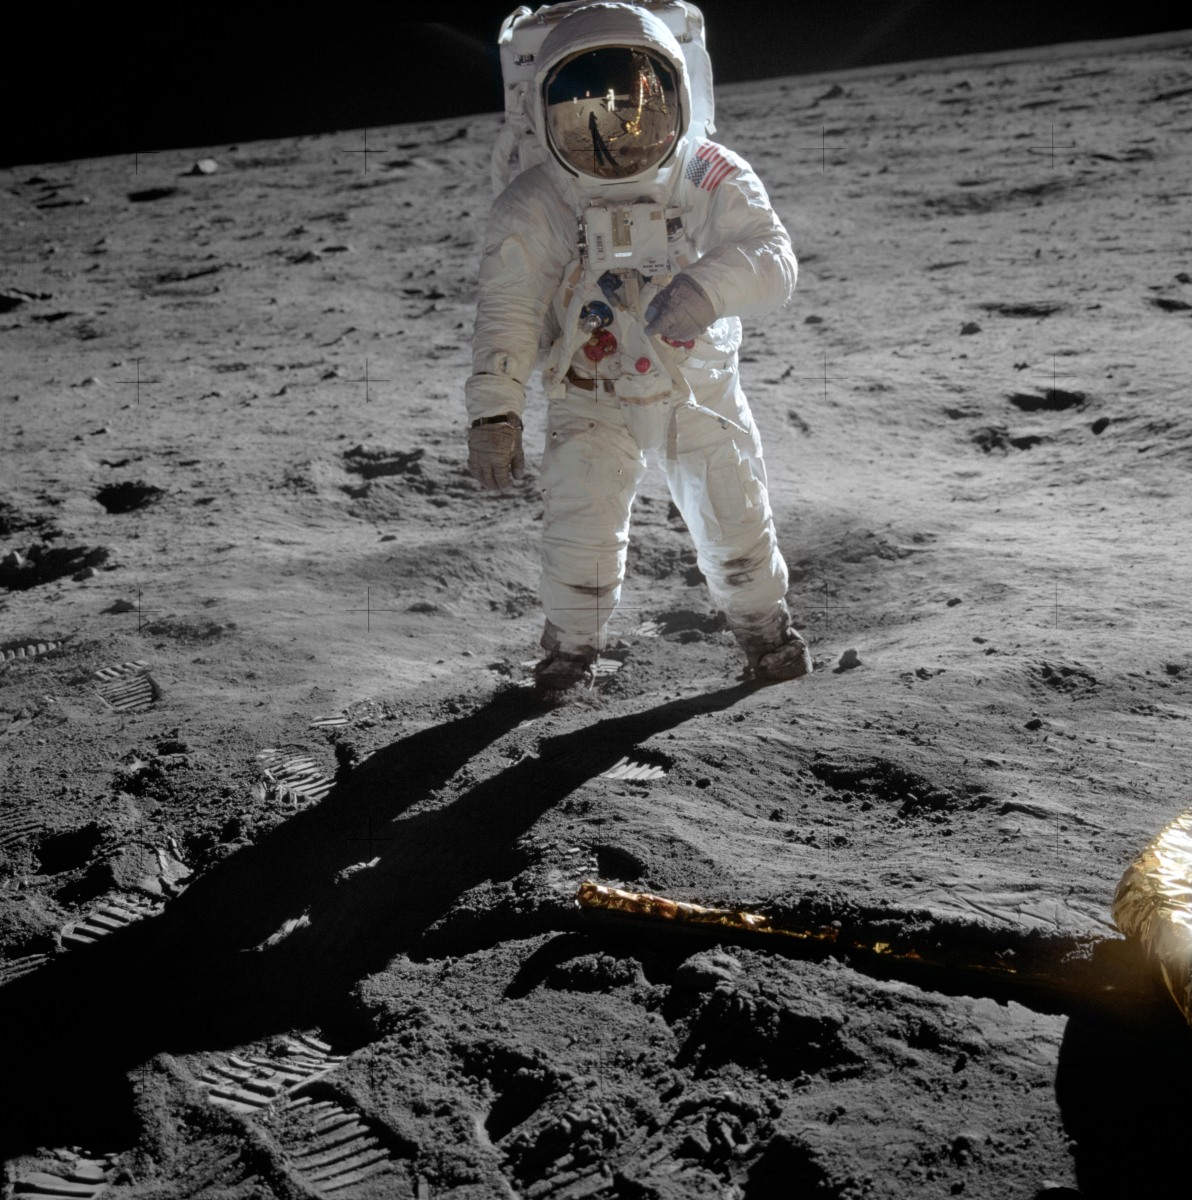 На 21 юли 1969 г. Нийл Армстронг и Едуин Олдрин (на снимката) стават първите хора, които стъпват на Луната. Източник: Neil Armstrong/NASA